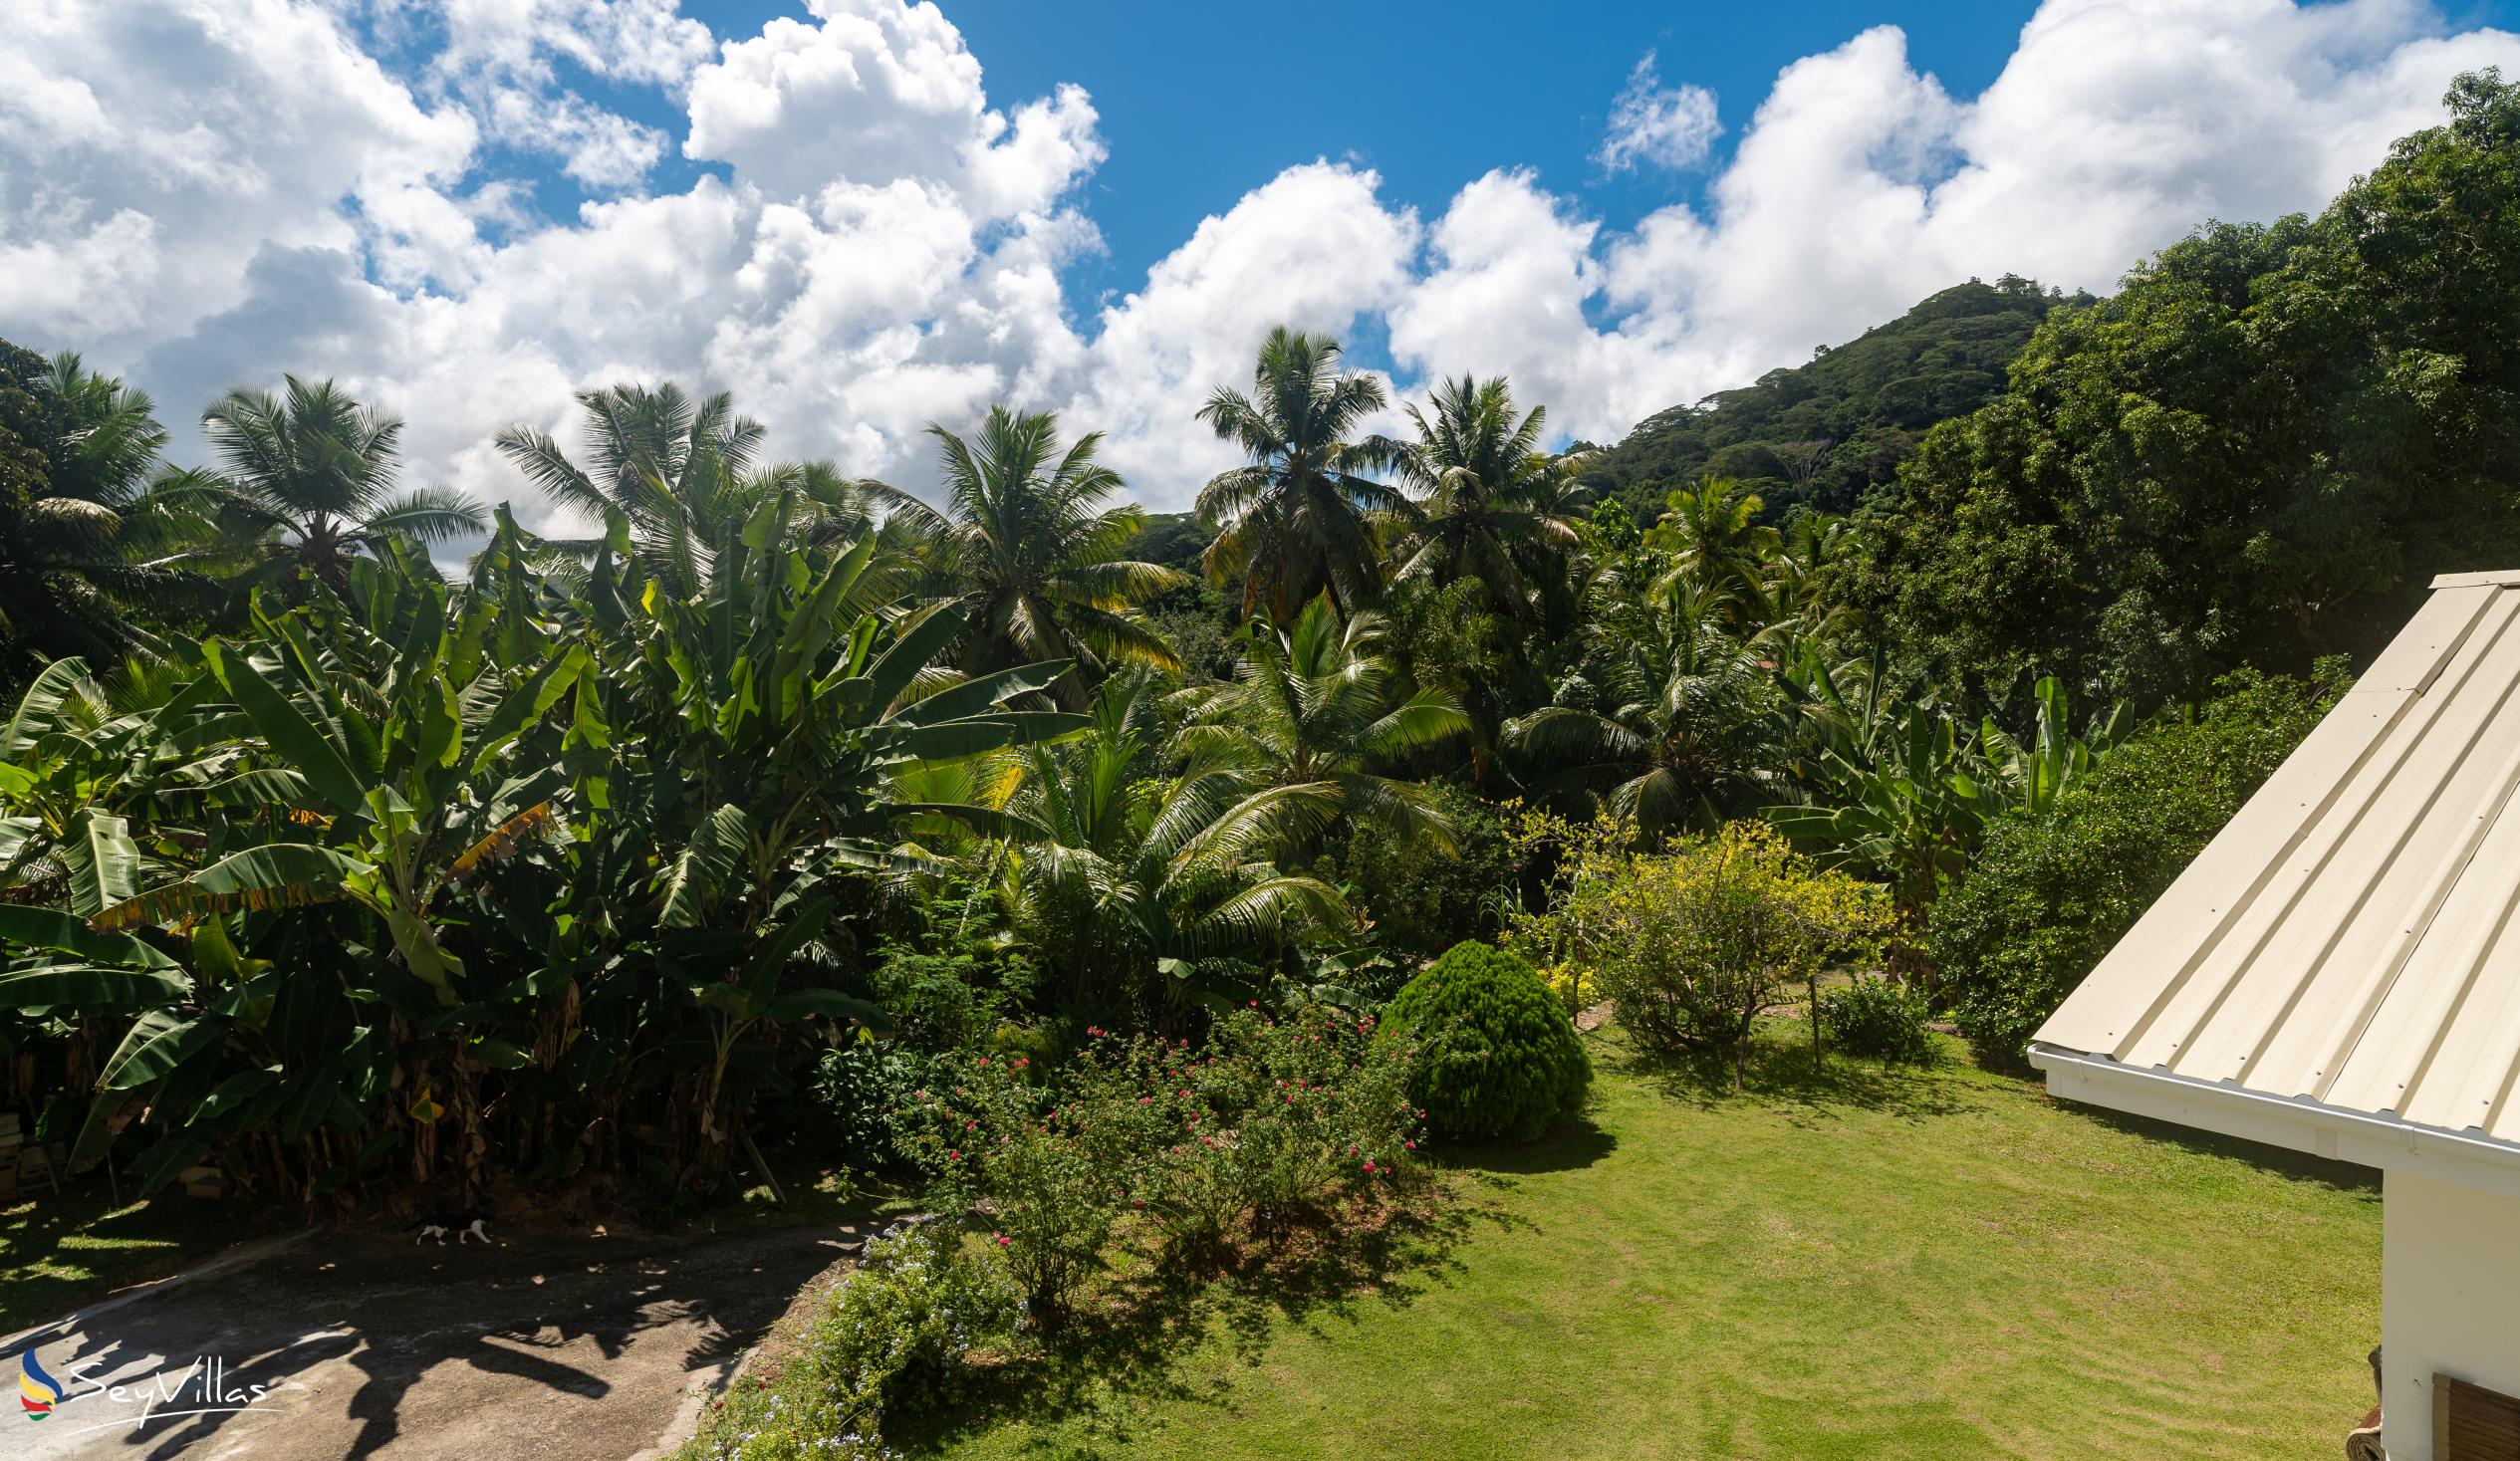 Foto 10: Paul's Residence - Aussenbereich - Mahé (Seychellen)